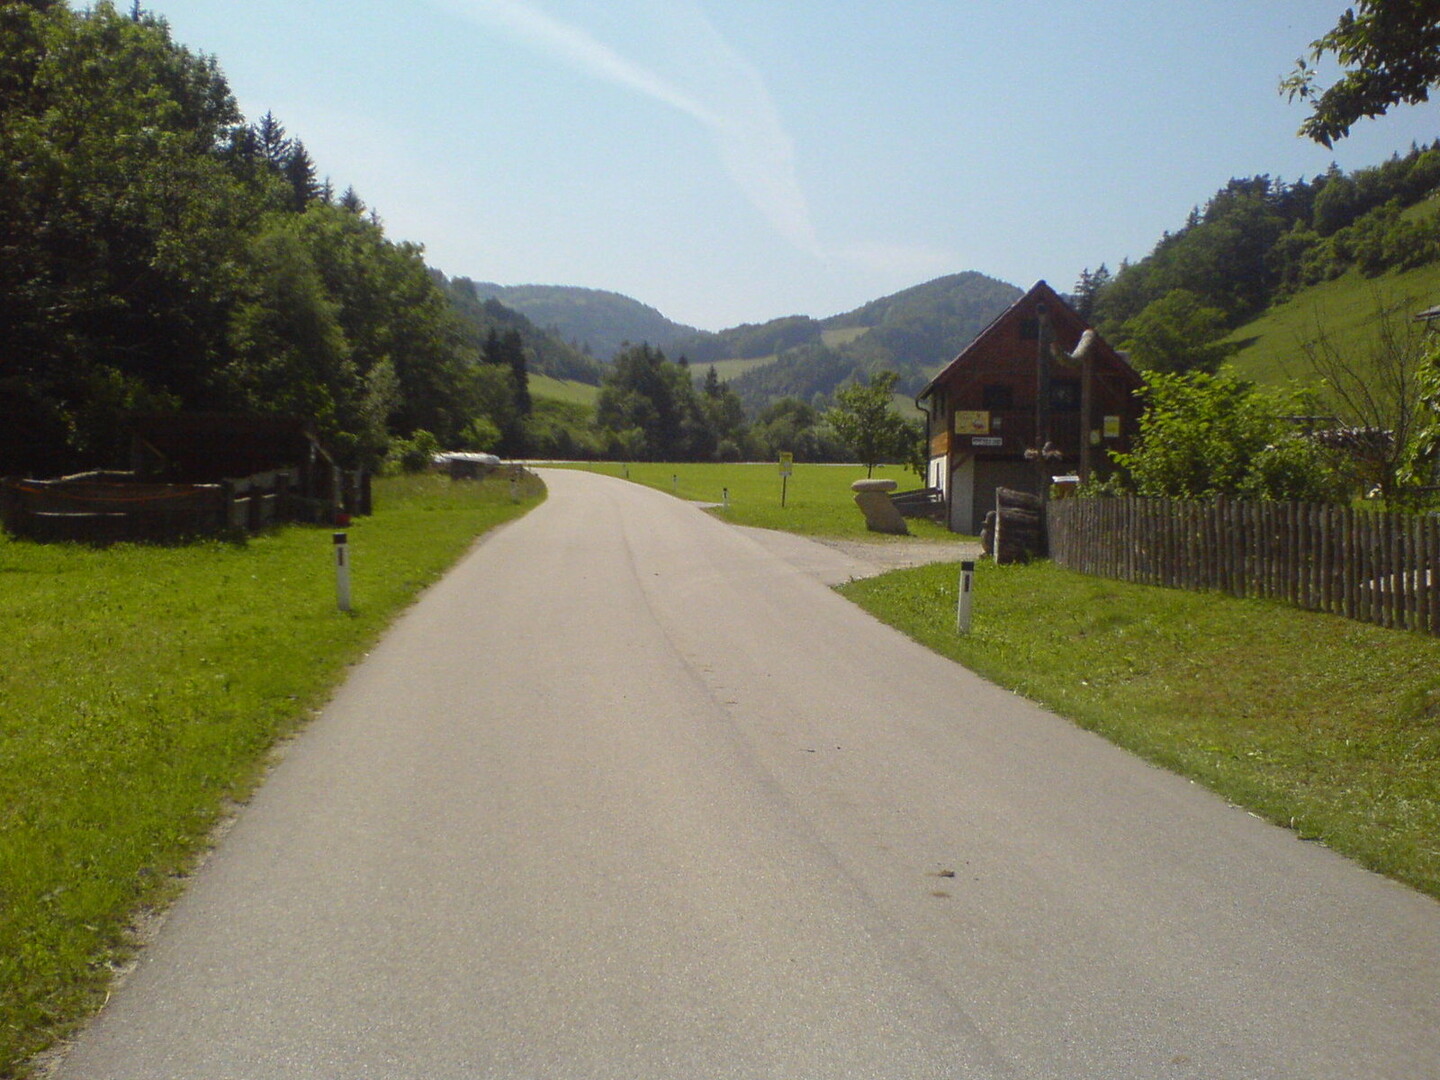 Durchs Weissenbachtal.